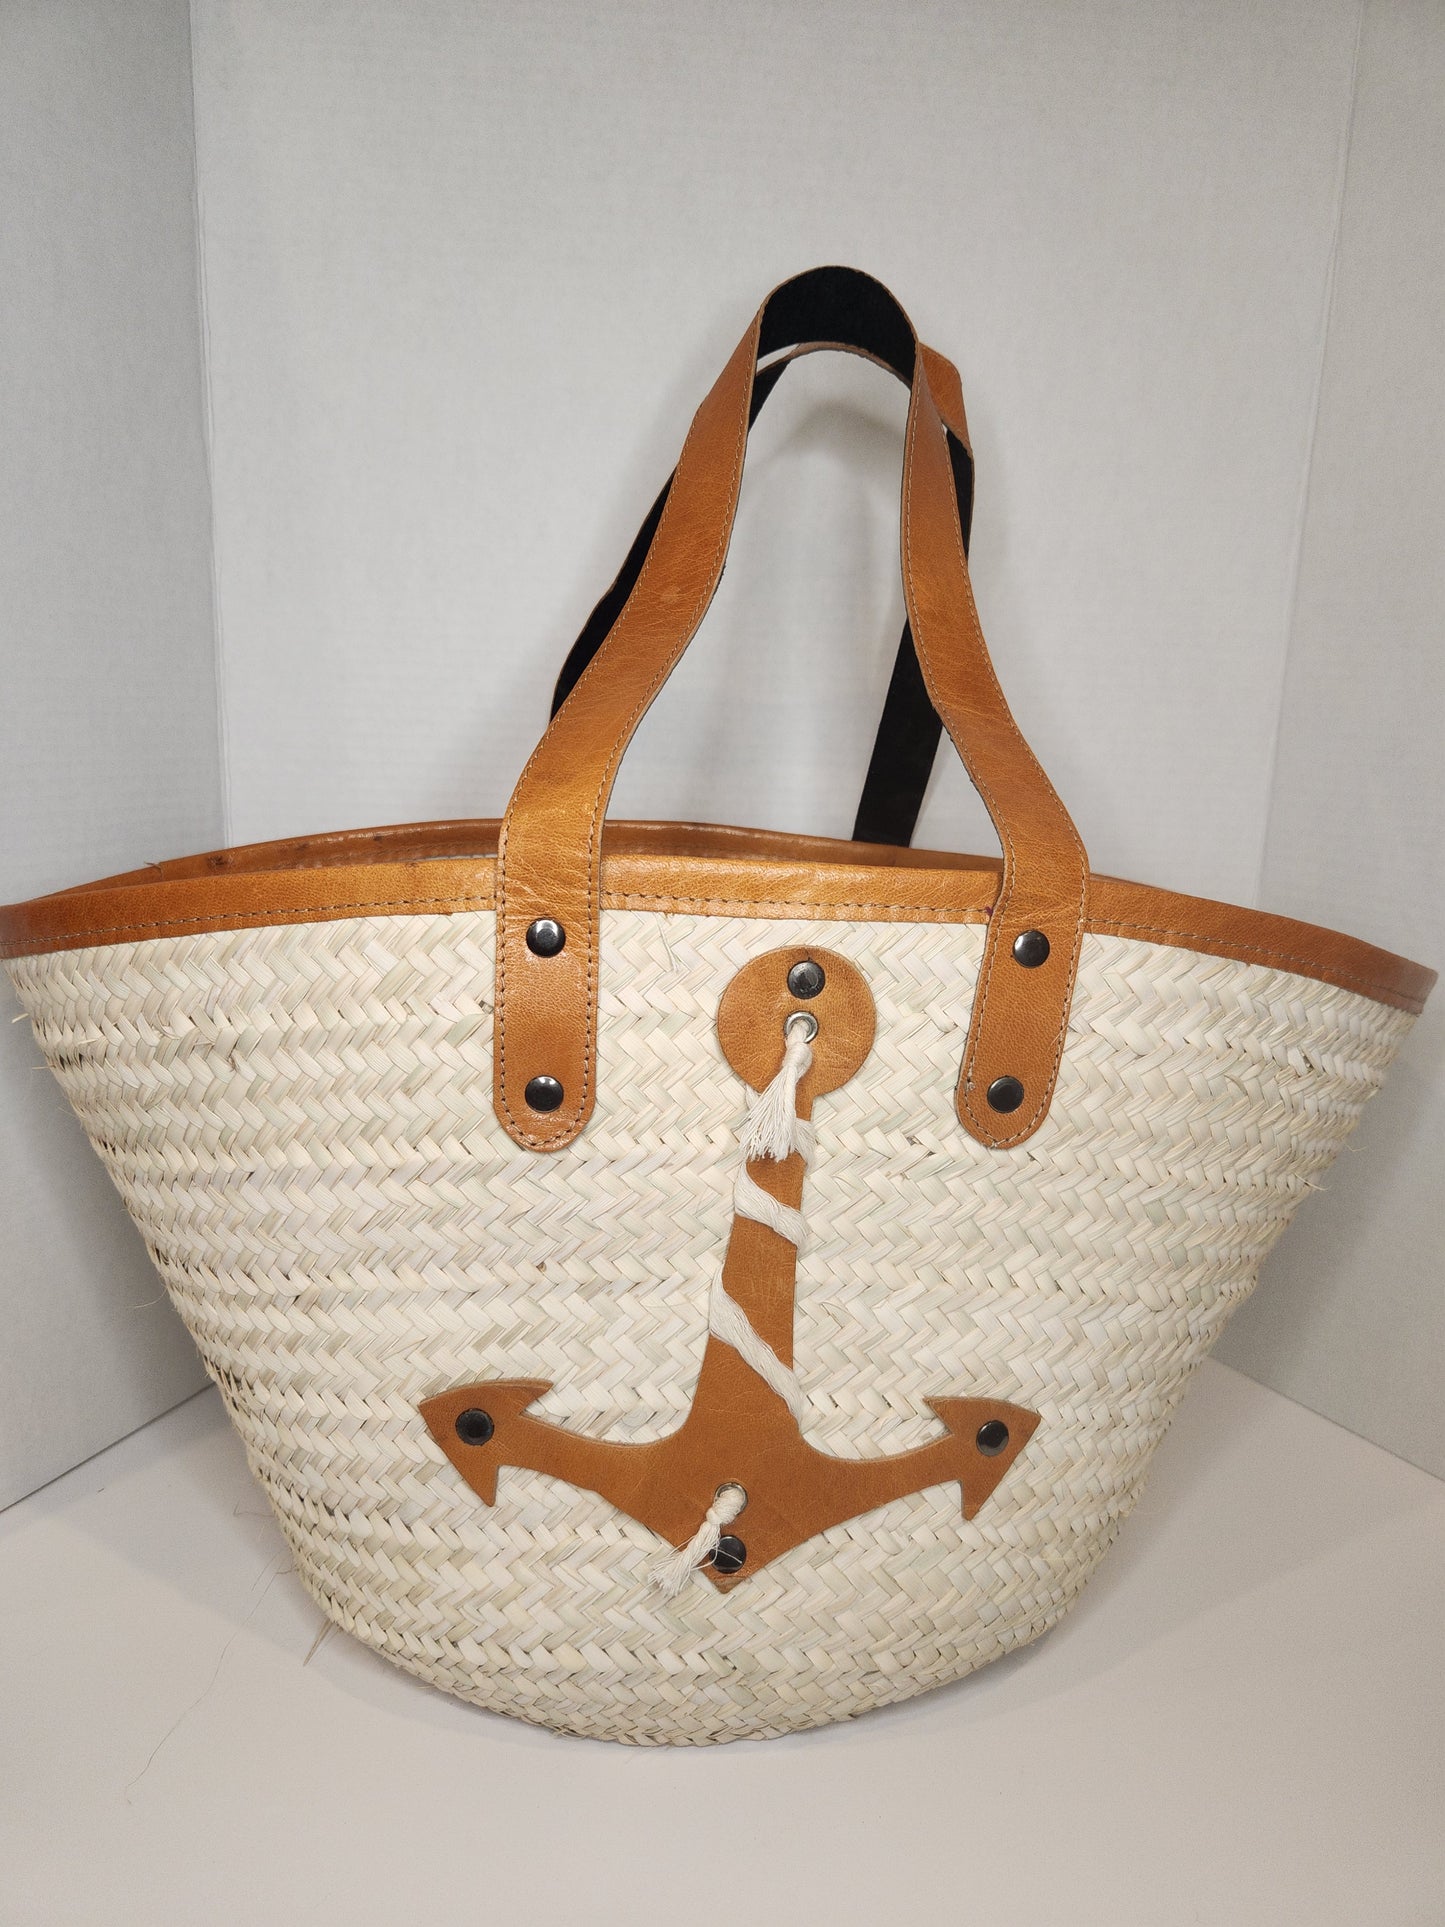 Straw (palm) basket leather